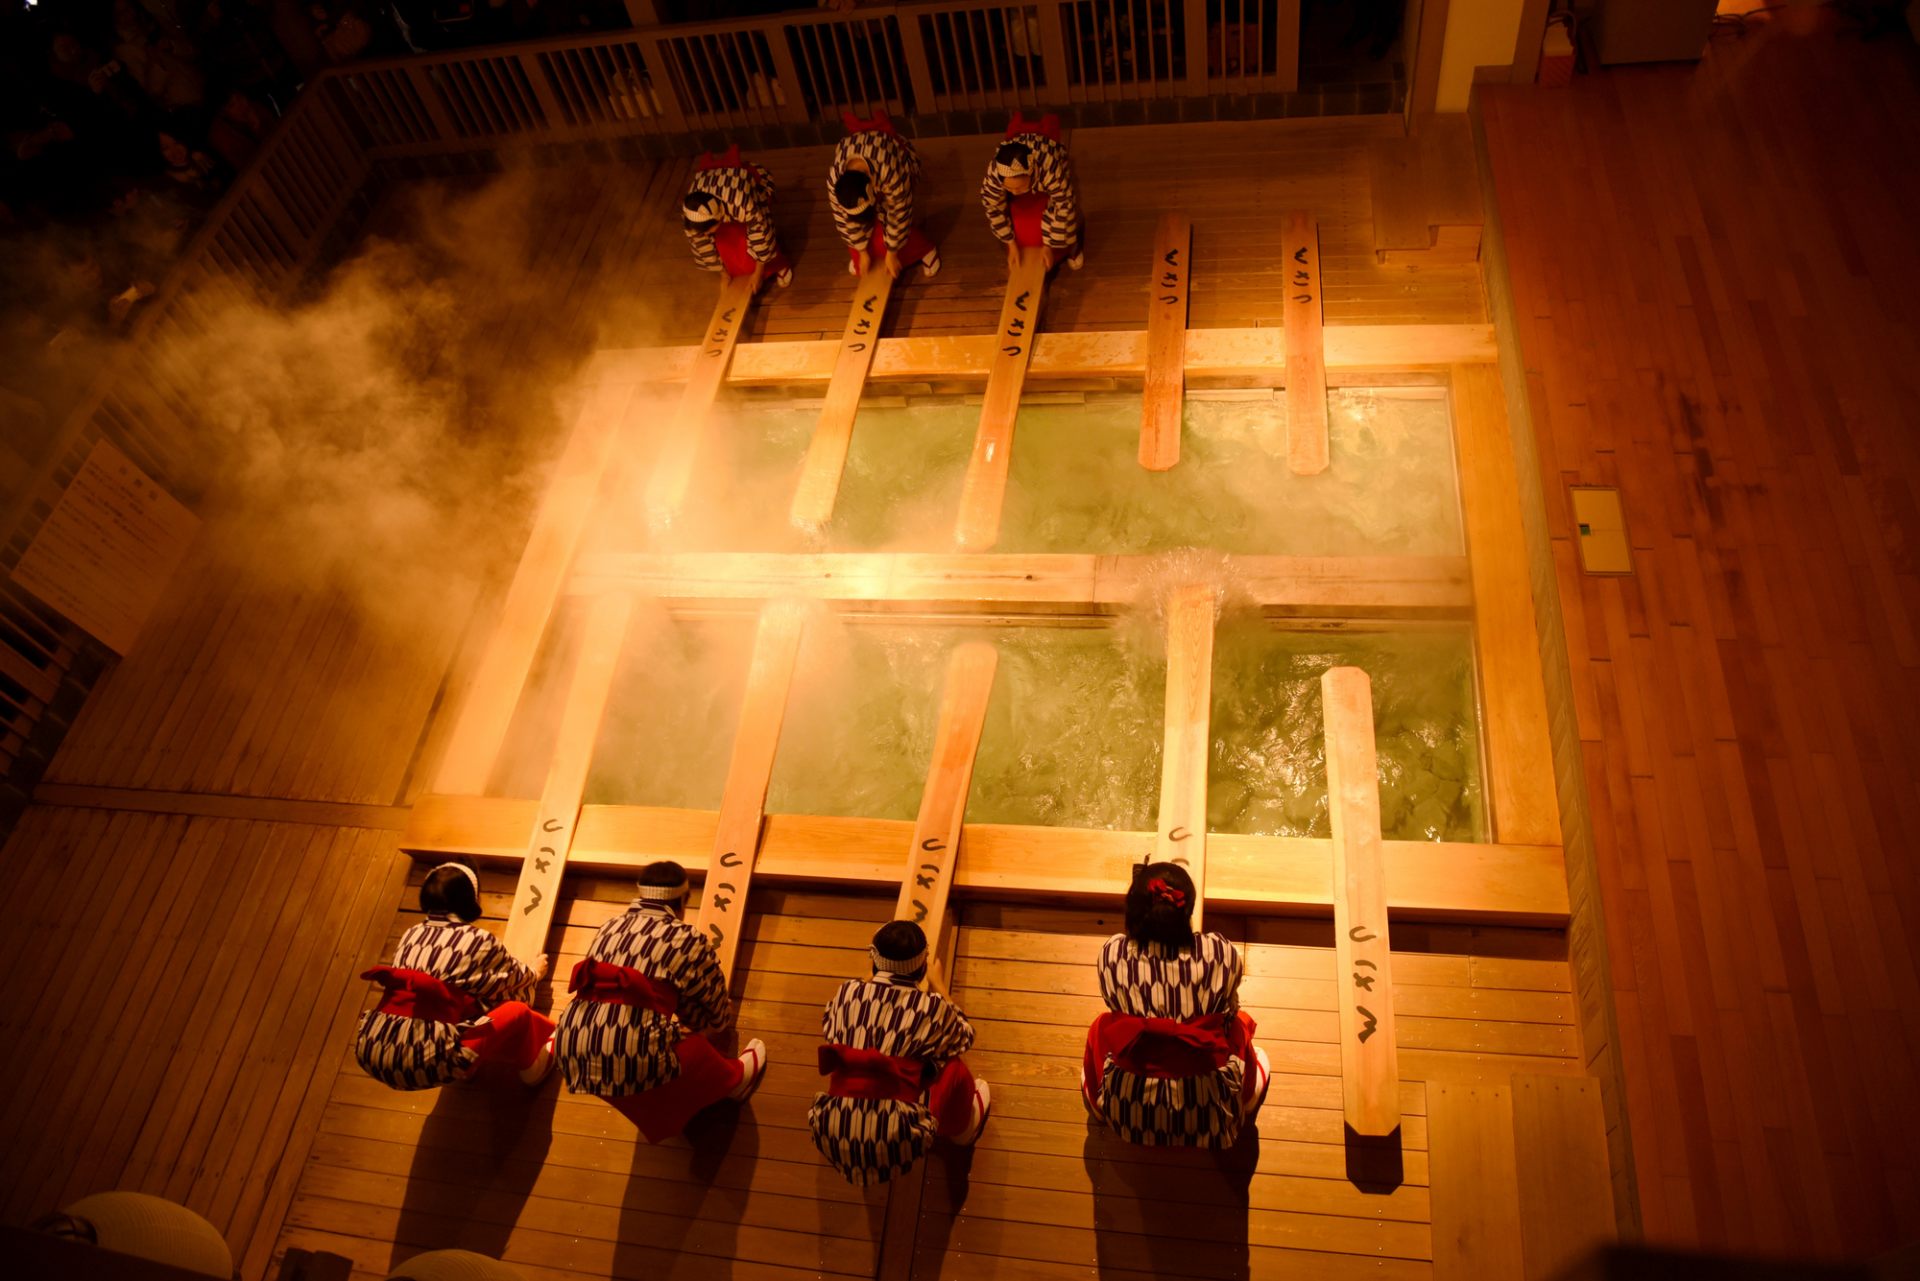 熱乃湯 傳承江戸時代独特入浴方式 湯揉 的溫泉地 好運日本行